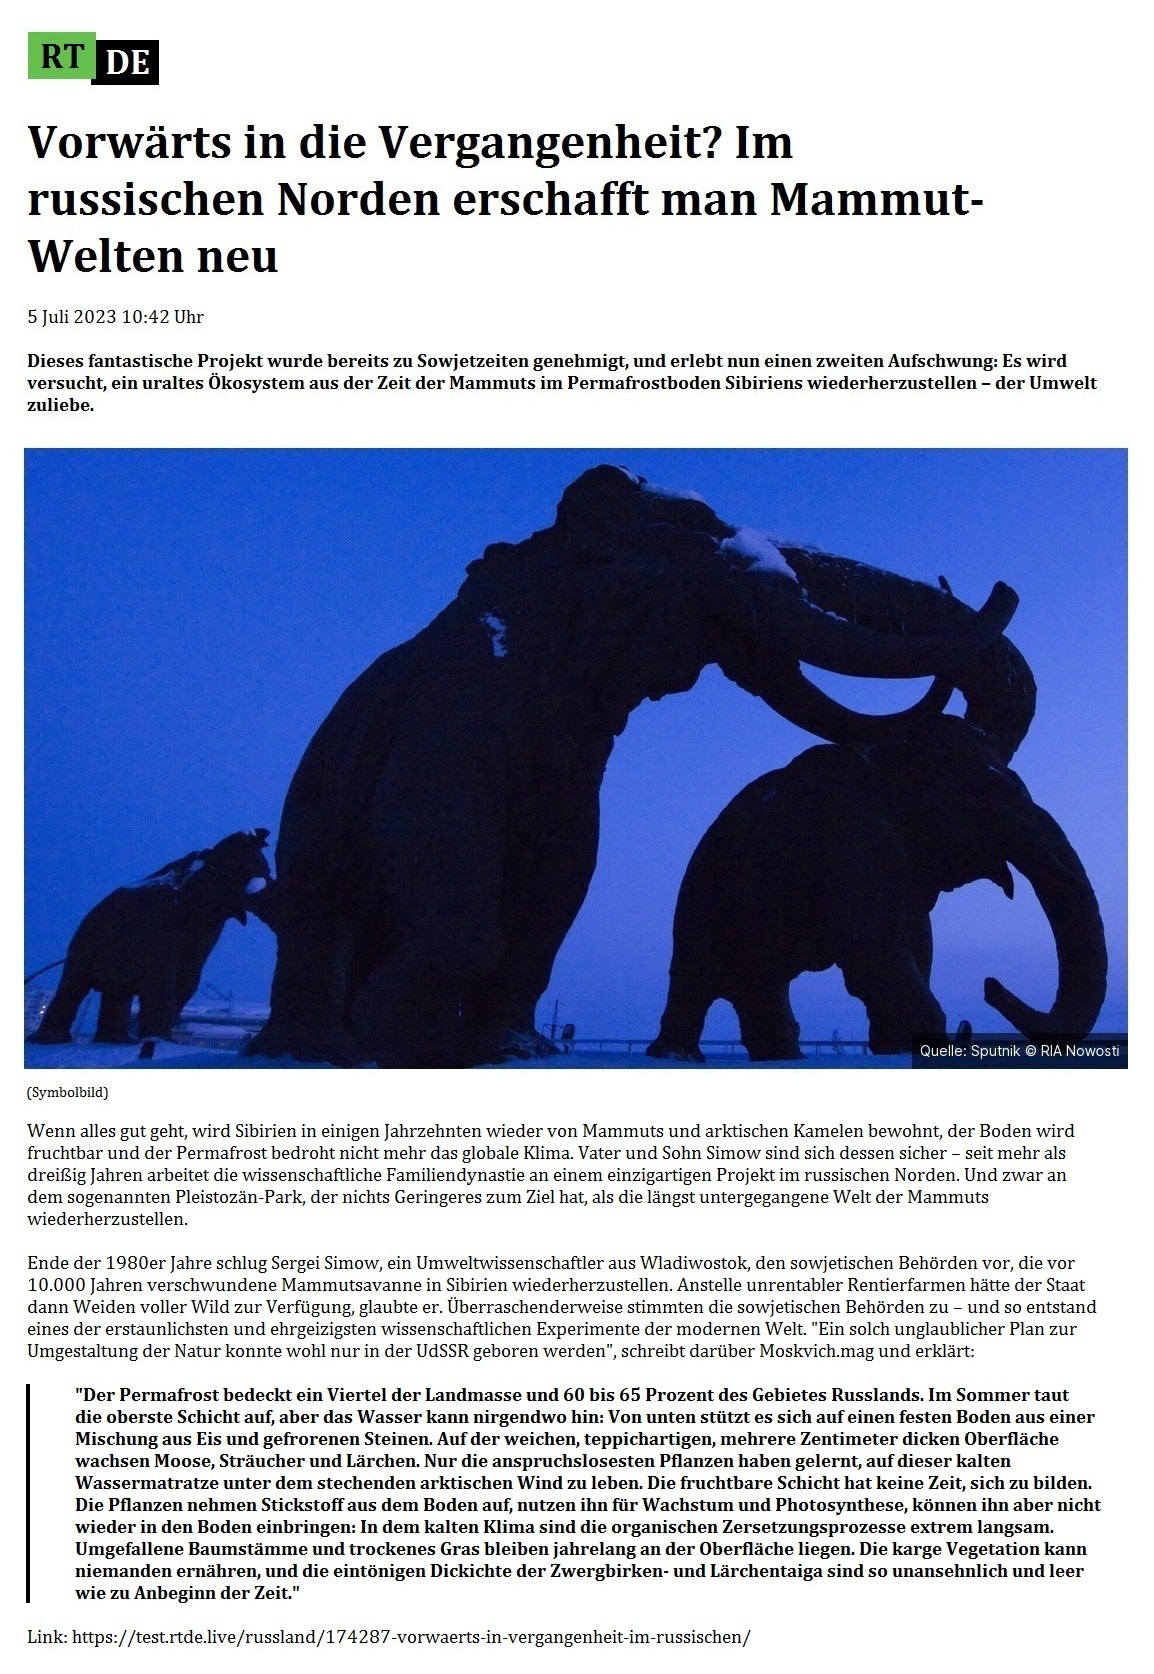 Vorwärts in die Vergangenheit? Im russischen Norden erschafft man Mammut-Welten neu - 5 Juli 2023 10:42 Uhr - Dieses fantastische Projekt wurde bereits zu Sowjetzeiten genehmigt, und erlebt nun einen zweiten Aufschwung: Es wird versucht, ein uraltes Ökosystem aus der Zeit der Mammuts im Permafrostboden Sibiriens wiederherzustellen – der Umwelt zuliebe. - 5 Juli 2023 10:42 Uhr - RT DE - Link: https://test.rtde.live/russland/174287-vorwaerts-in-vergangenheit-im-russischen/